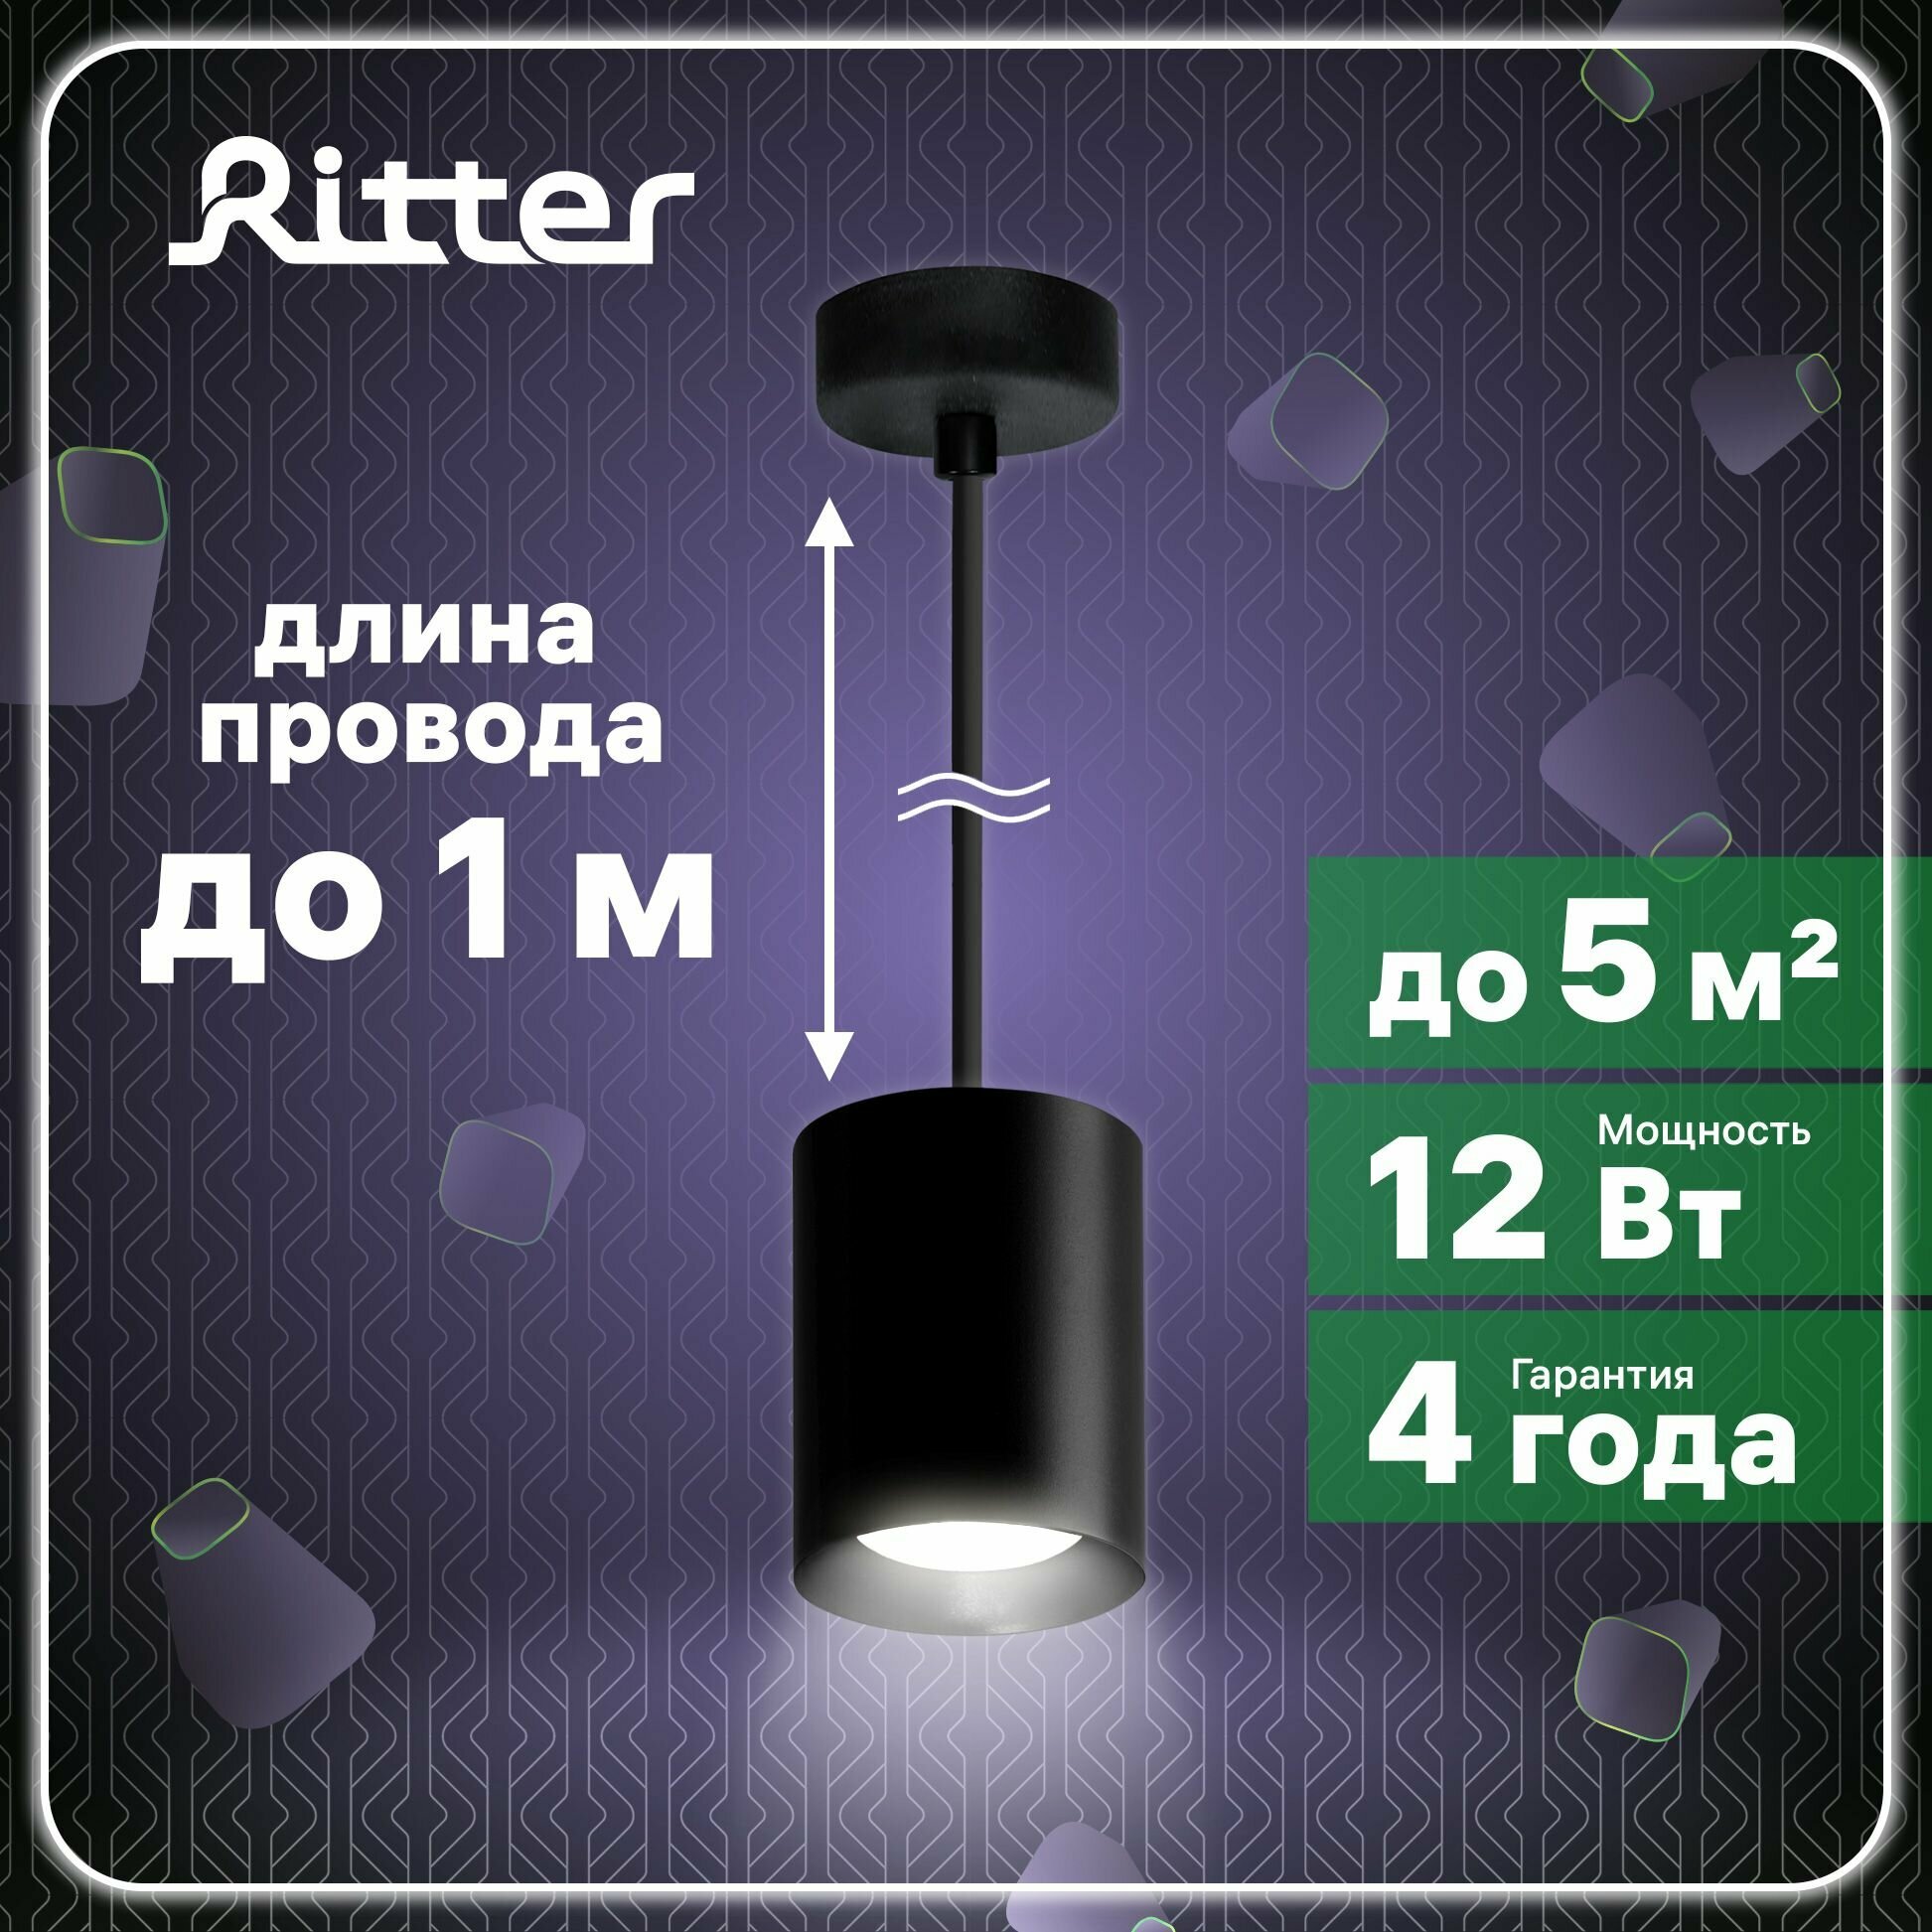 Светильник подвесной светодиодный Arton LED, 12 Вт, 4200К, провод 1м, 80х80х100мм, алюминий, черный, точечный накладной светильник, Ritter, 59985 2